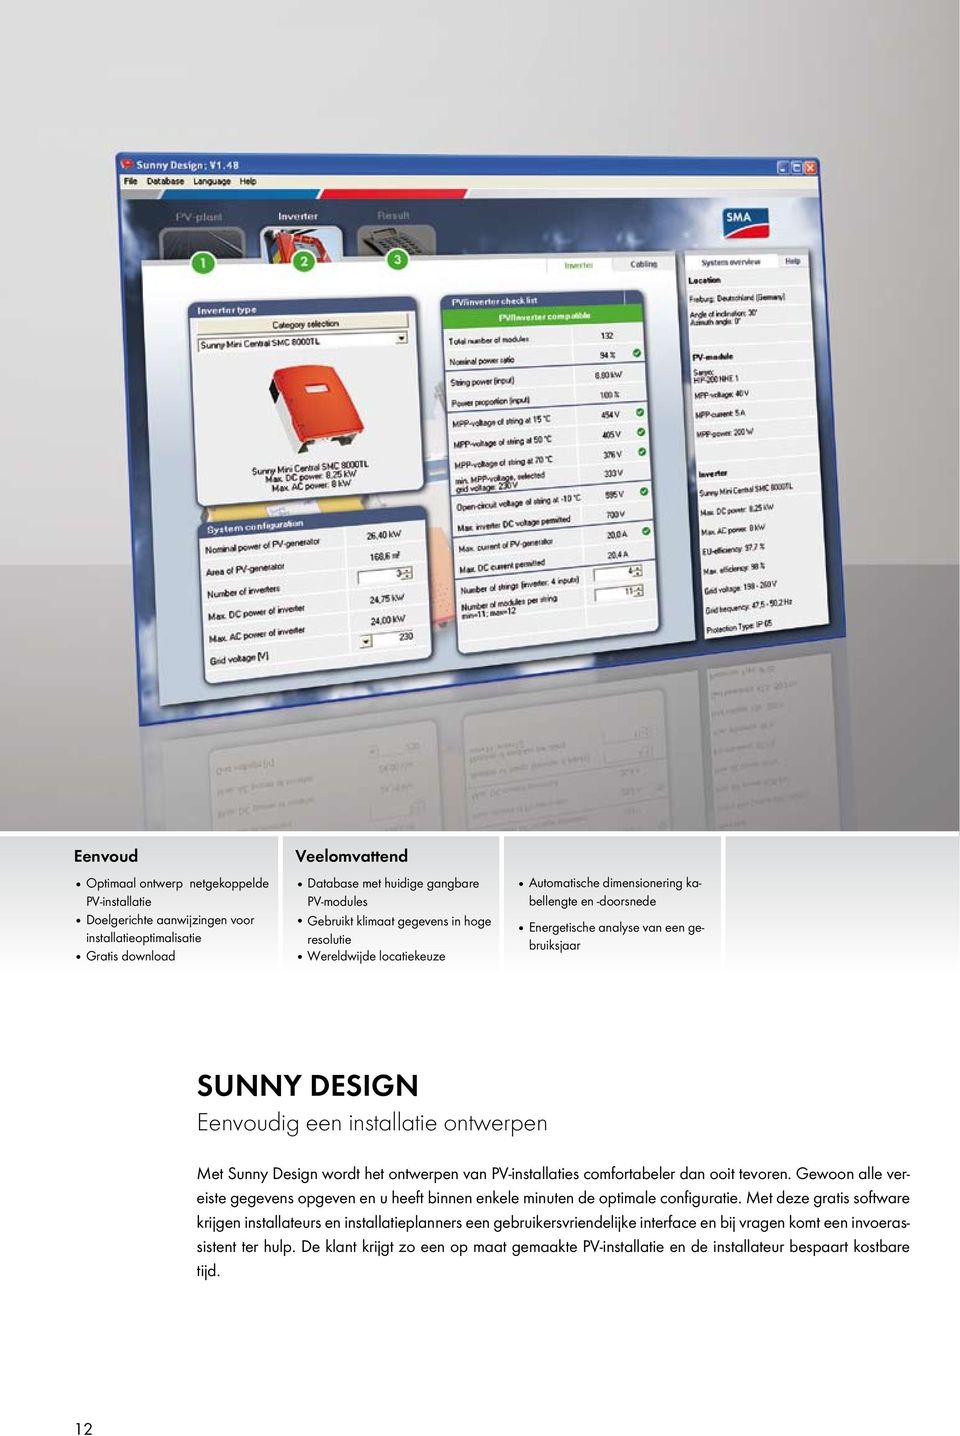 Met Sunny Design wordt het ontwerpen van PV-installaties comfortabeler dan ooit tevoren. Gewoon alle vereiste gegevens opgeven en u heeft binnen enkele minuten de optimale configuratie.